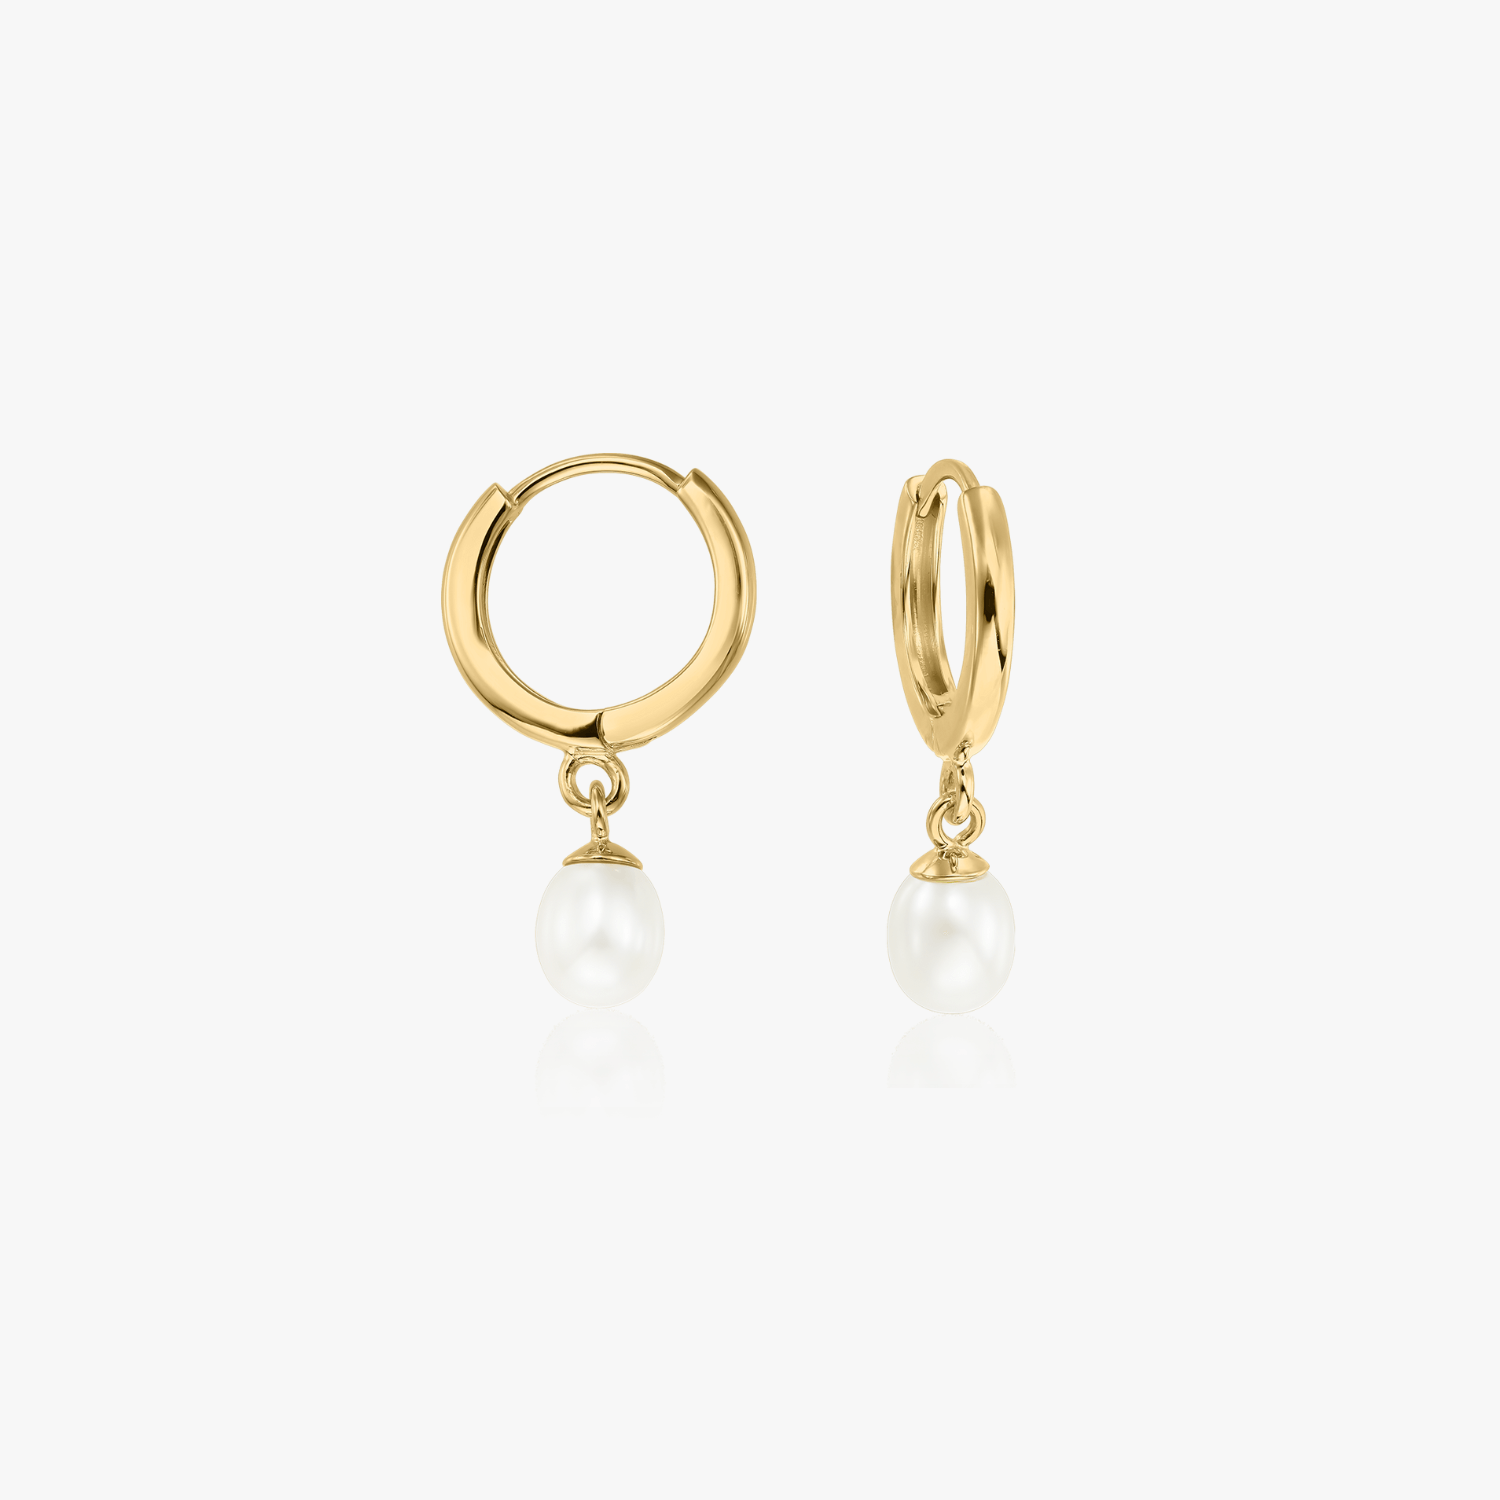 Pearl Hoops gold earrings - Natural pearls